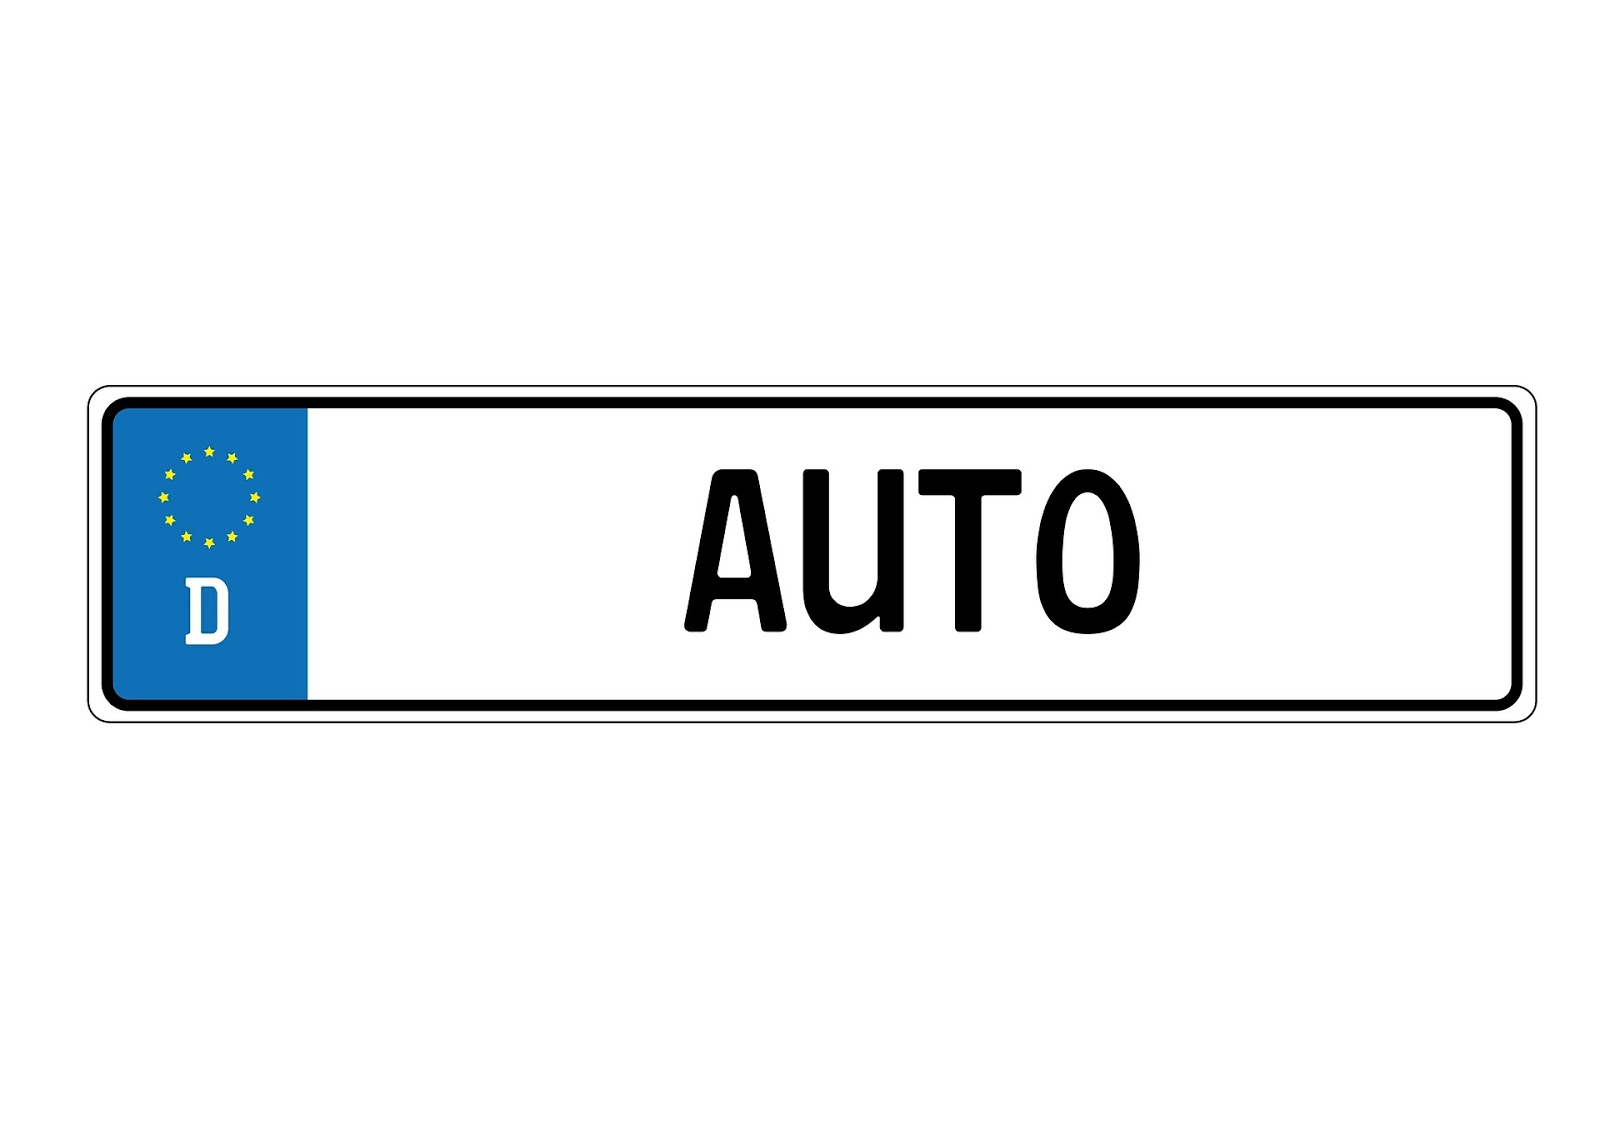 Kennzeichen am falschen Fahrzeug | Bremerhaven News